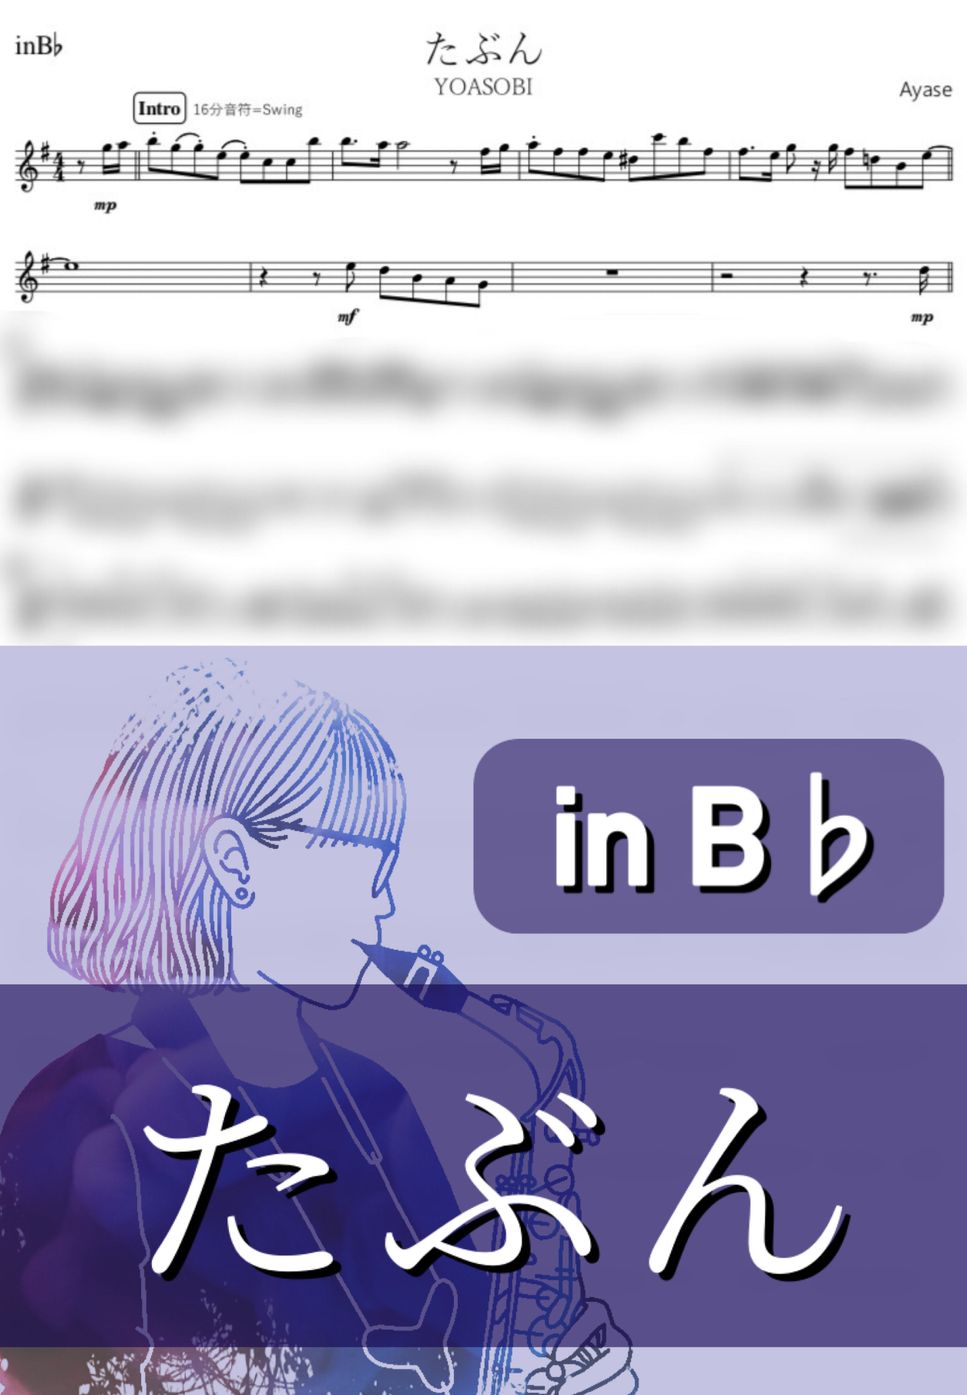 YOASOBI - たぶん (B♭) by kanamusic